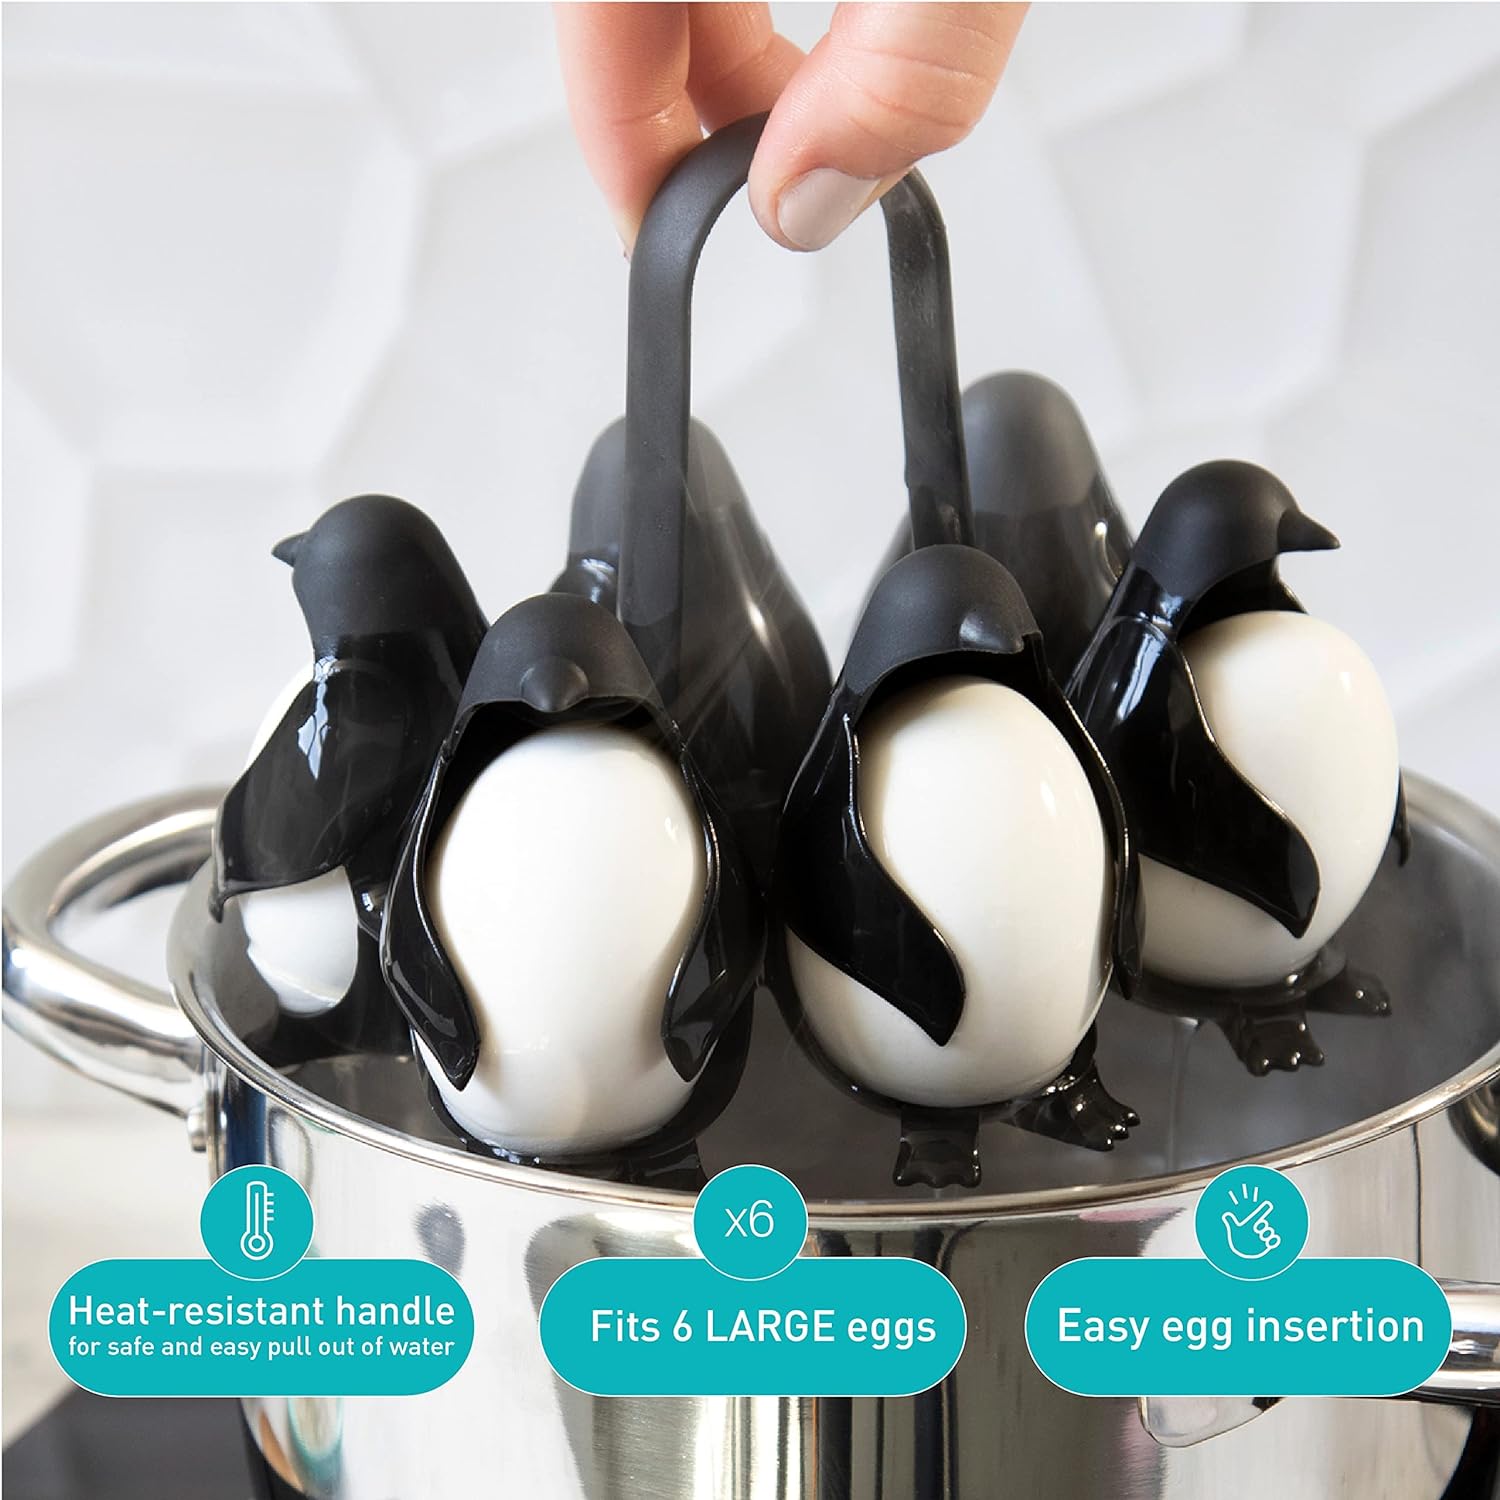 Penguin-shaped egg boiler for hard or soft eggs, holds 6 eggs